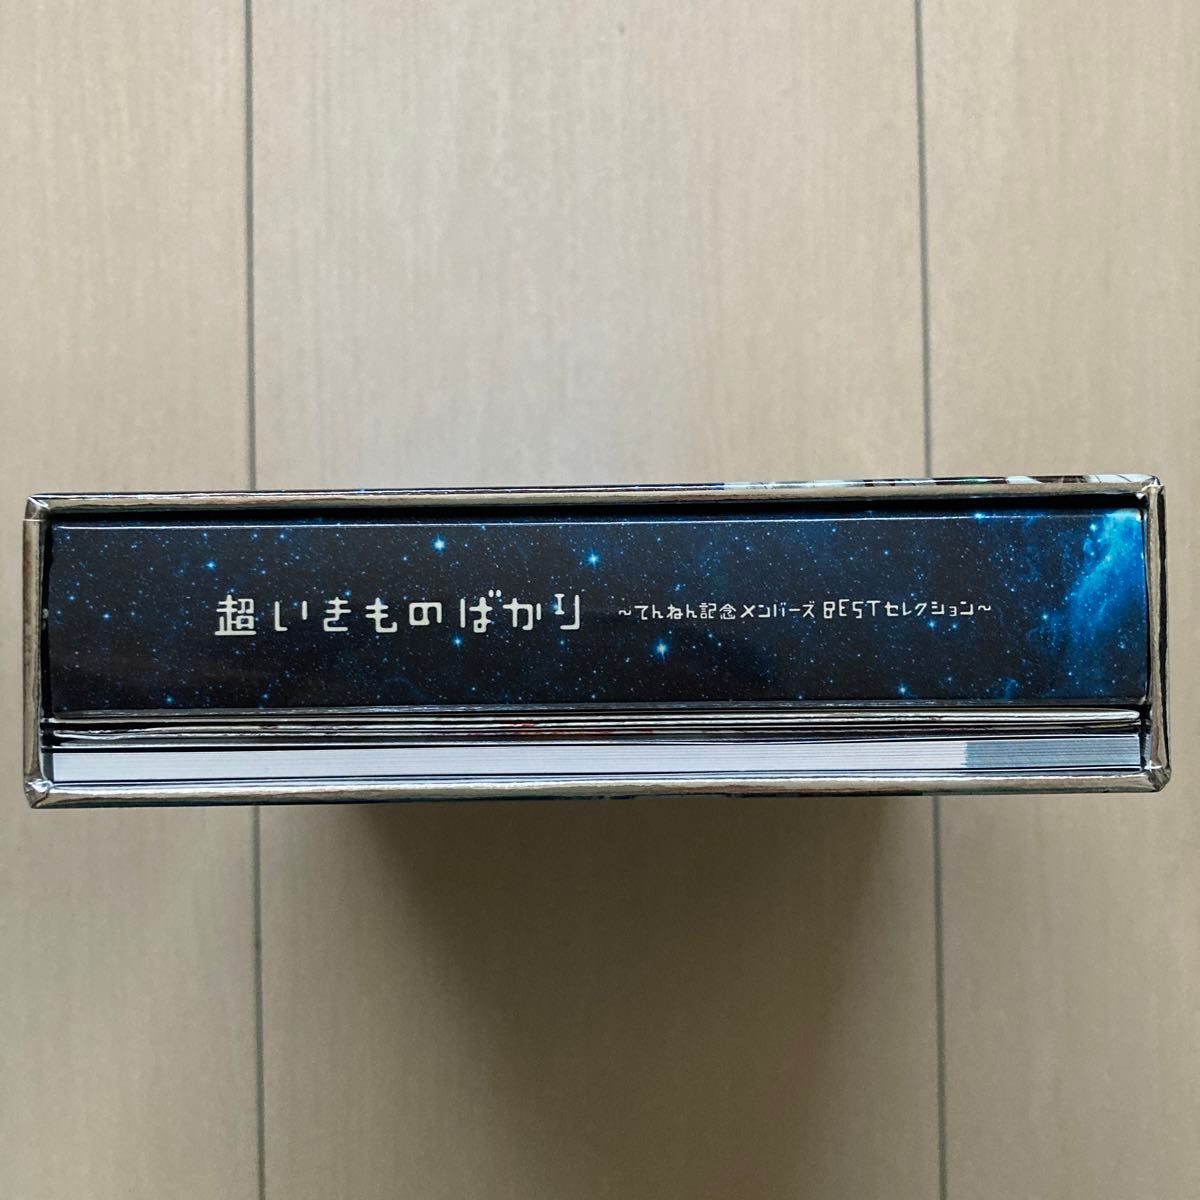 超いきものばかり~てんねん記念メンバーズBESTセレクション~ (初回生産限定盤) (4CD)